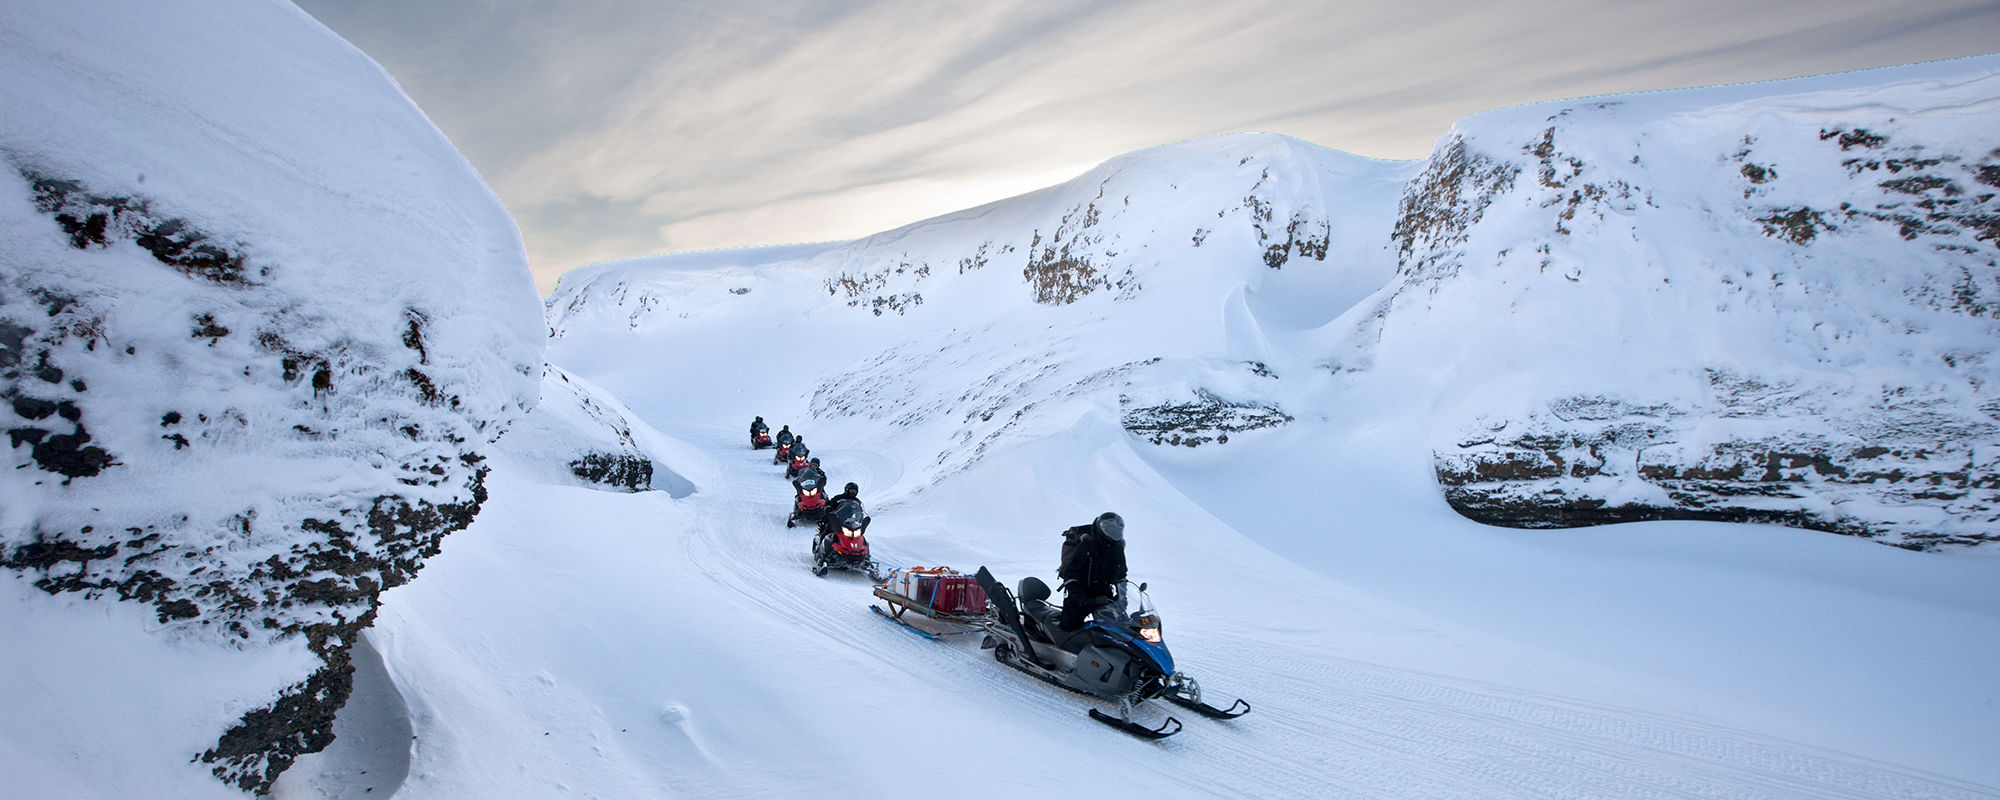 Schneemobil fahren auf Spitzbergen